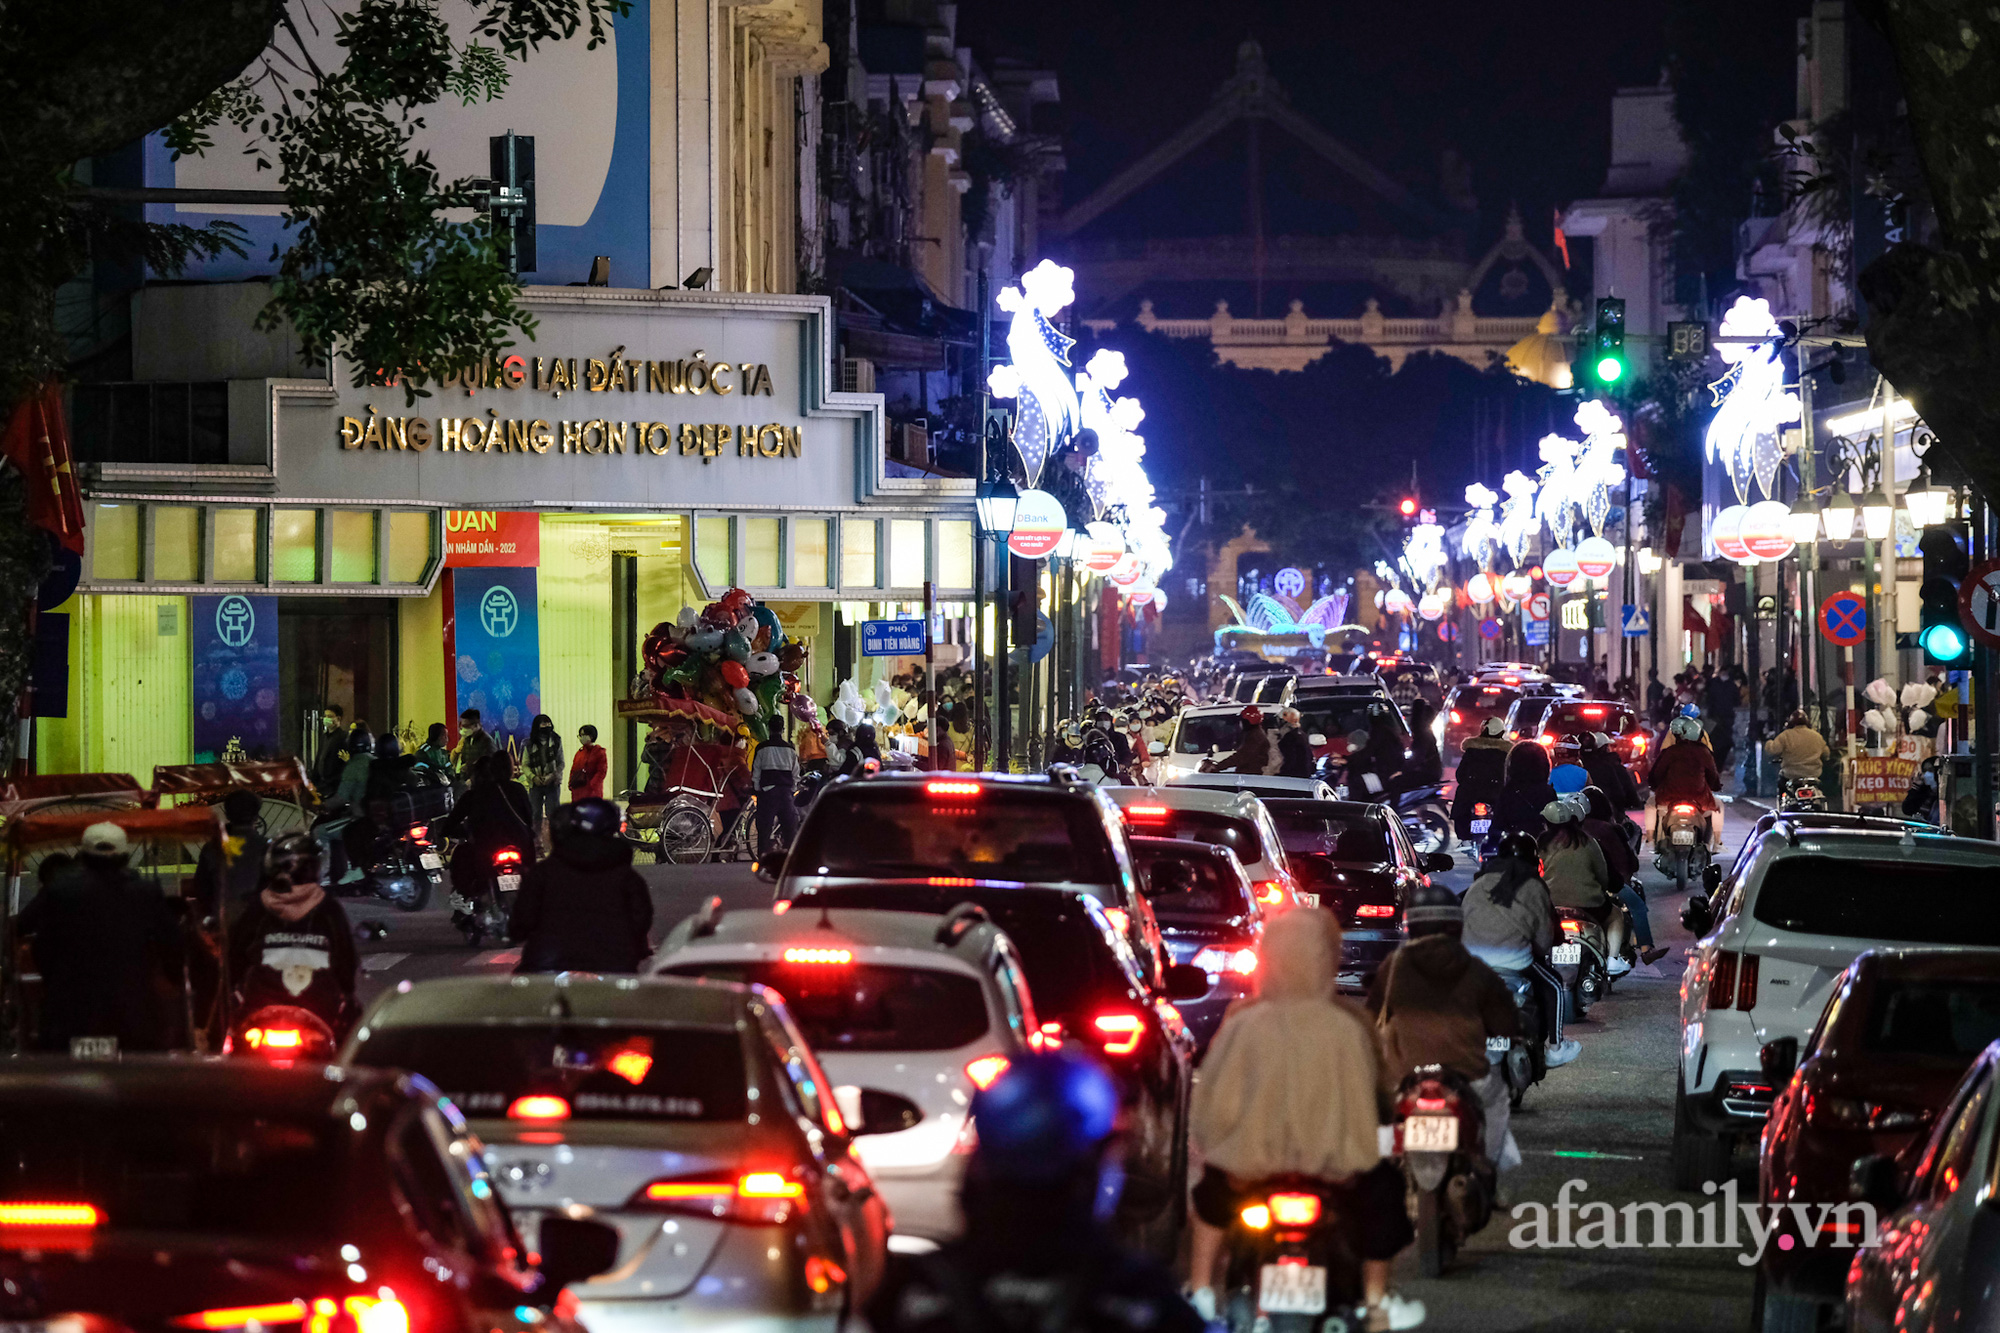 Phố đi bộ hồ Gươm – Hình ảnh sẽ cho bạn thấy lễ hội tấp nập, đông đúc và những ánh đèn lung linh rực rỡ vào ban đêm. Hãy tận hưởng cảm giác phóng khoáng khi được đi bộ trên con đường nơi thành phố hồ Gươm đẹp nhất Việt Nam.